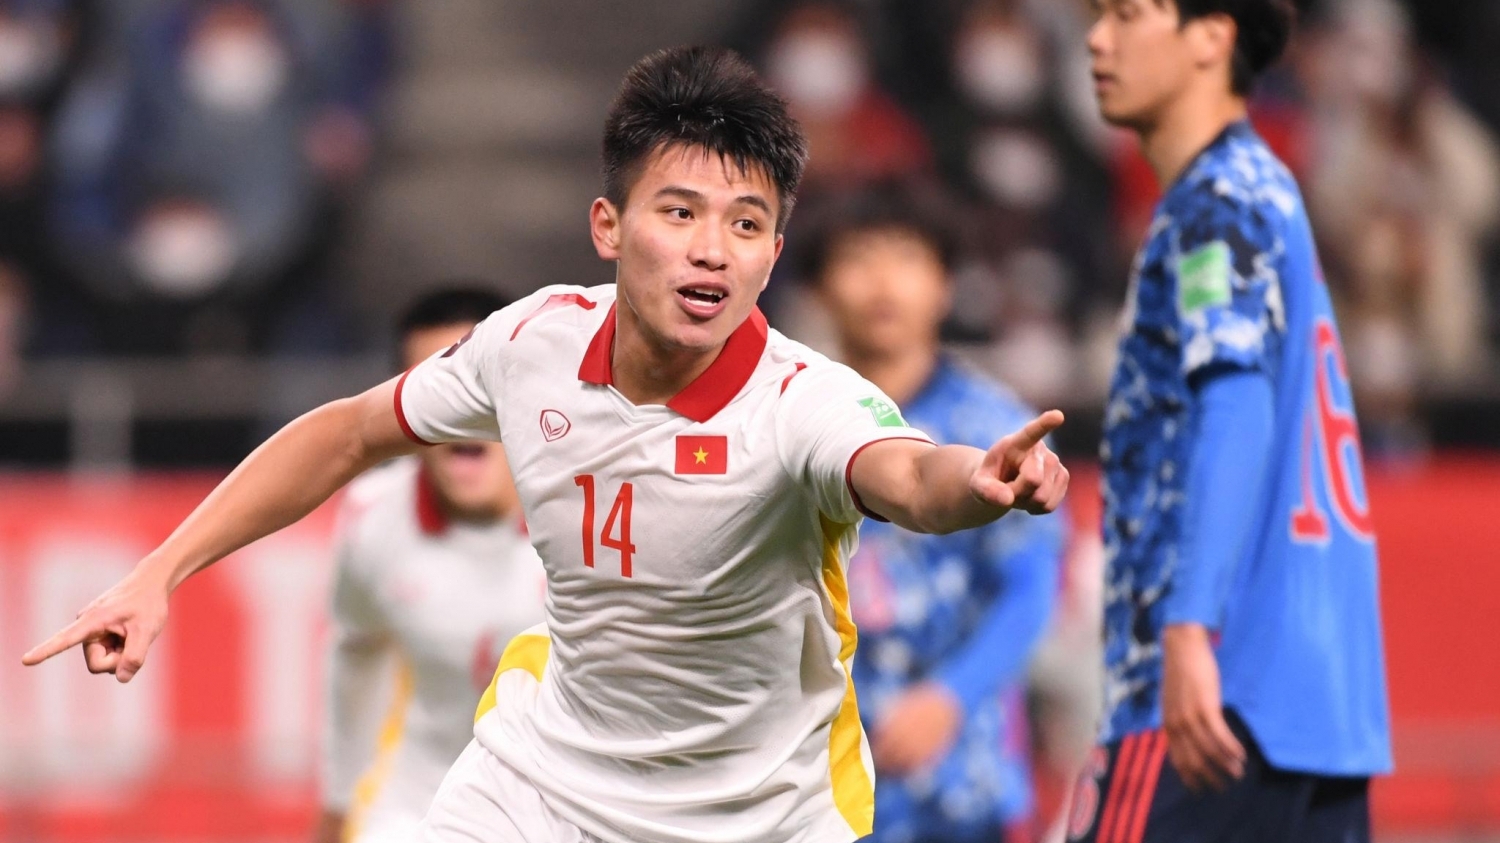 Tin tức thể thao ngày 1/6: Thanh Bình được AFC đánh giá là 1 trong những cầu thủ đáng xem nhất U23 châu Á